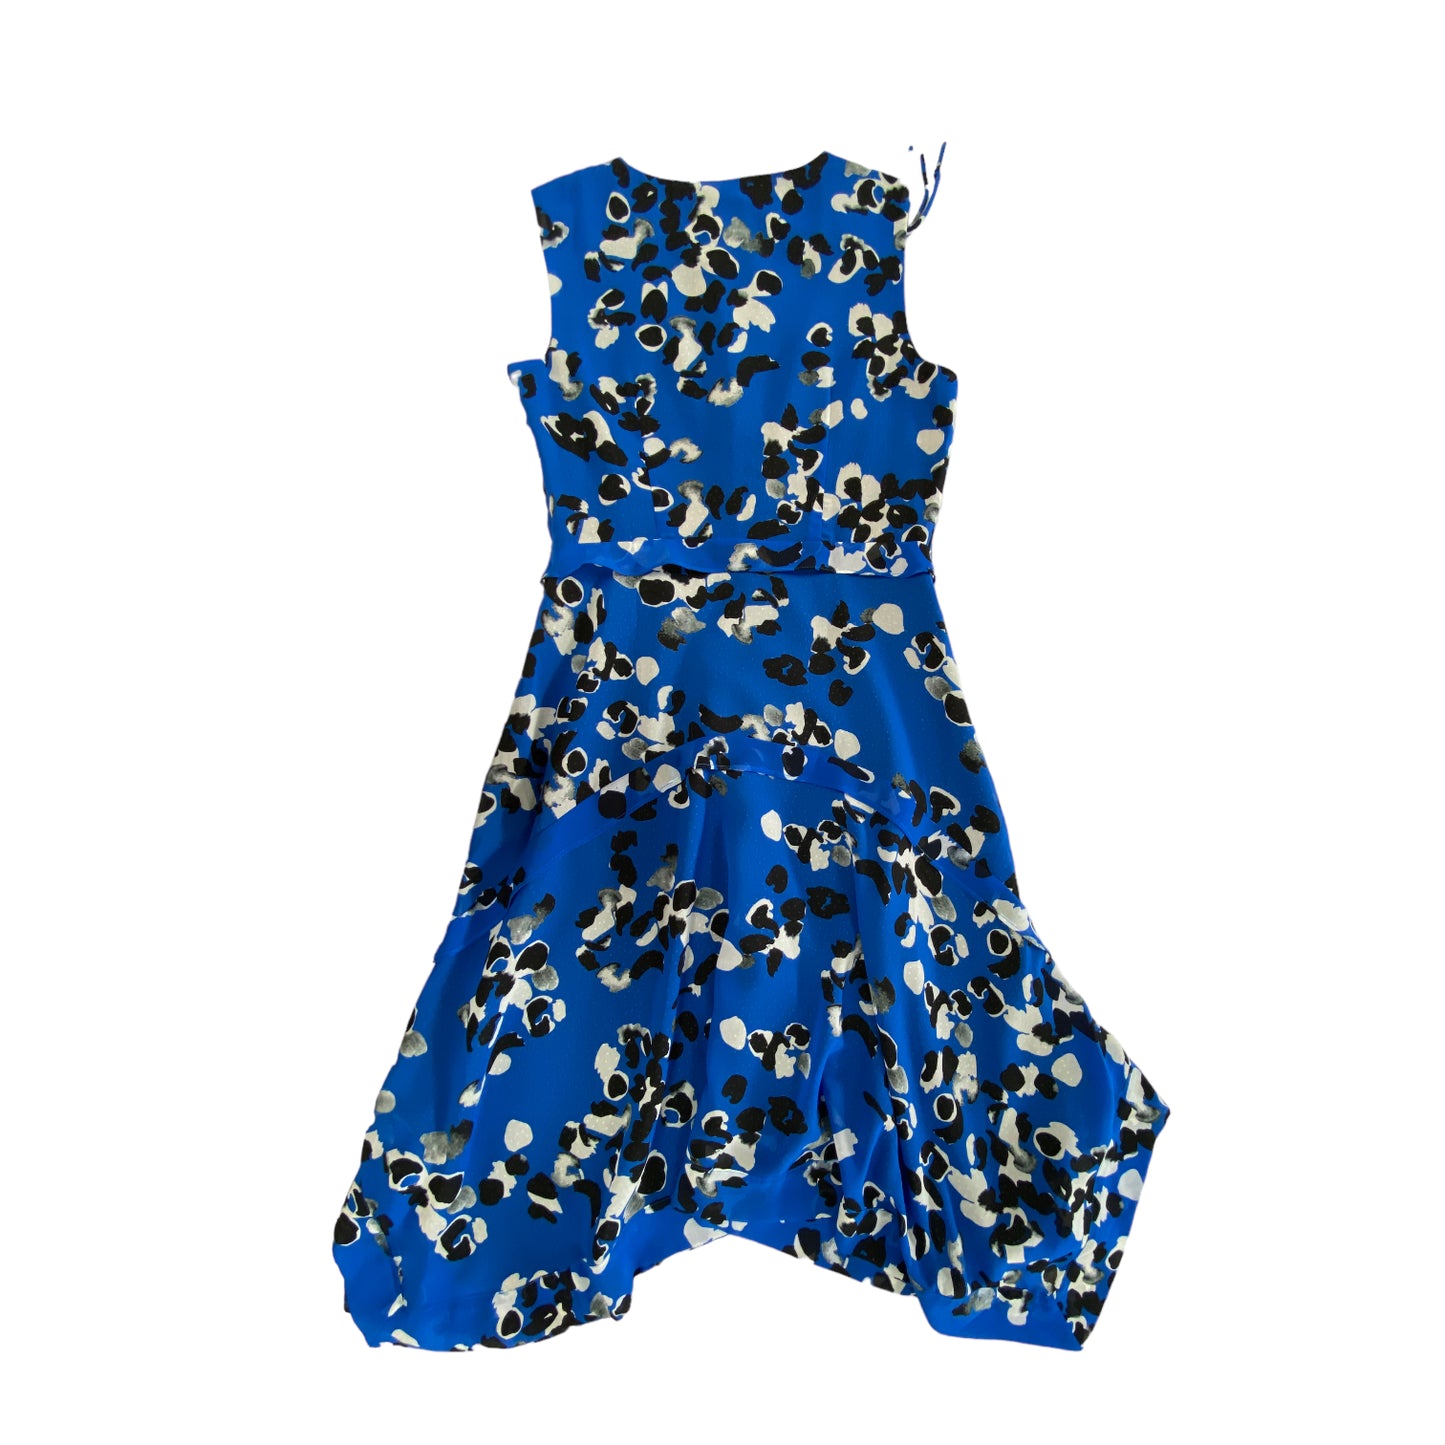 Dress Party Midi By Cabi  Size: Xs